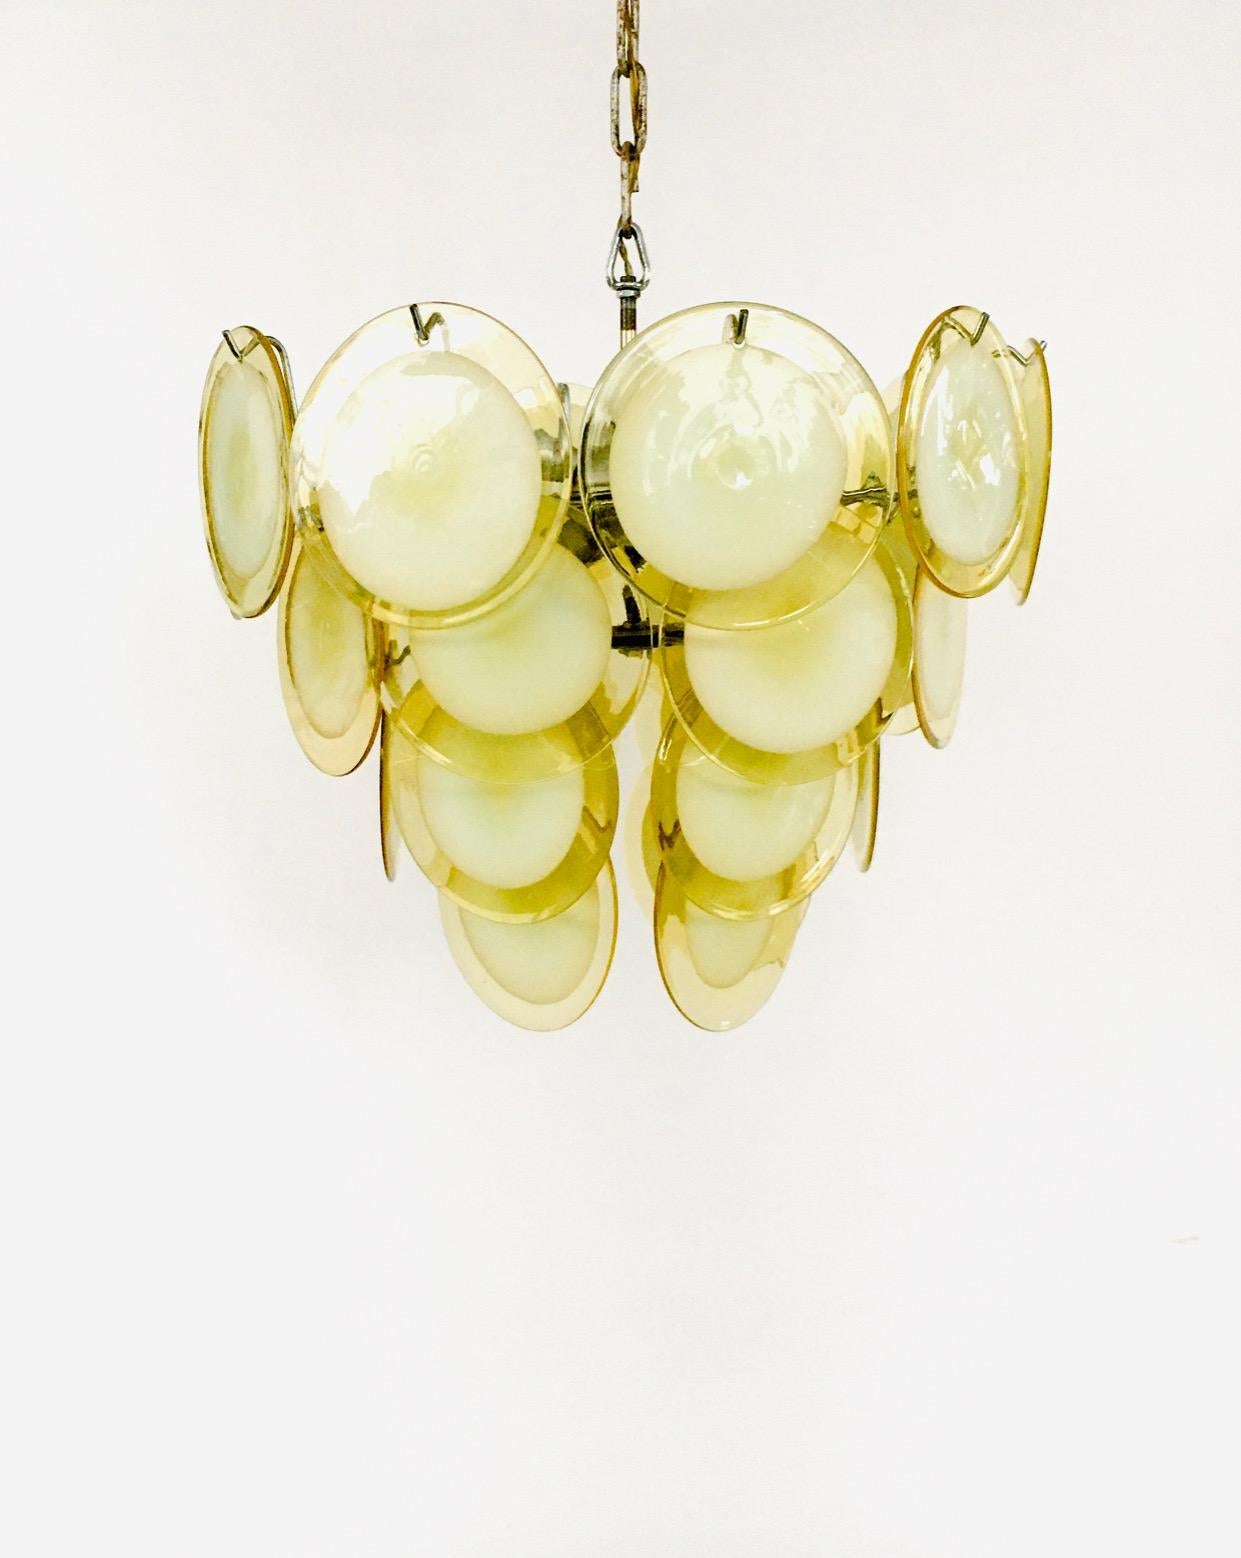 Vintage Midcentury Italian Design Venetian Murano Glass Disc Chandelier par Gino Vistosi pour Venini ou Mazzega. Fabriqué en Italie, Murano, années 1960. Majestic lampe suspendue classique de Murano entièrement originale. Composé de 4 couches avec